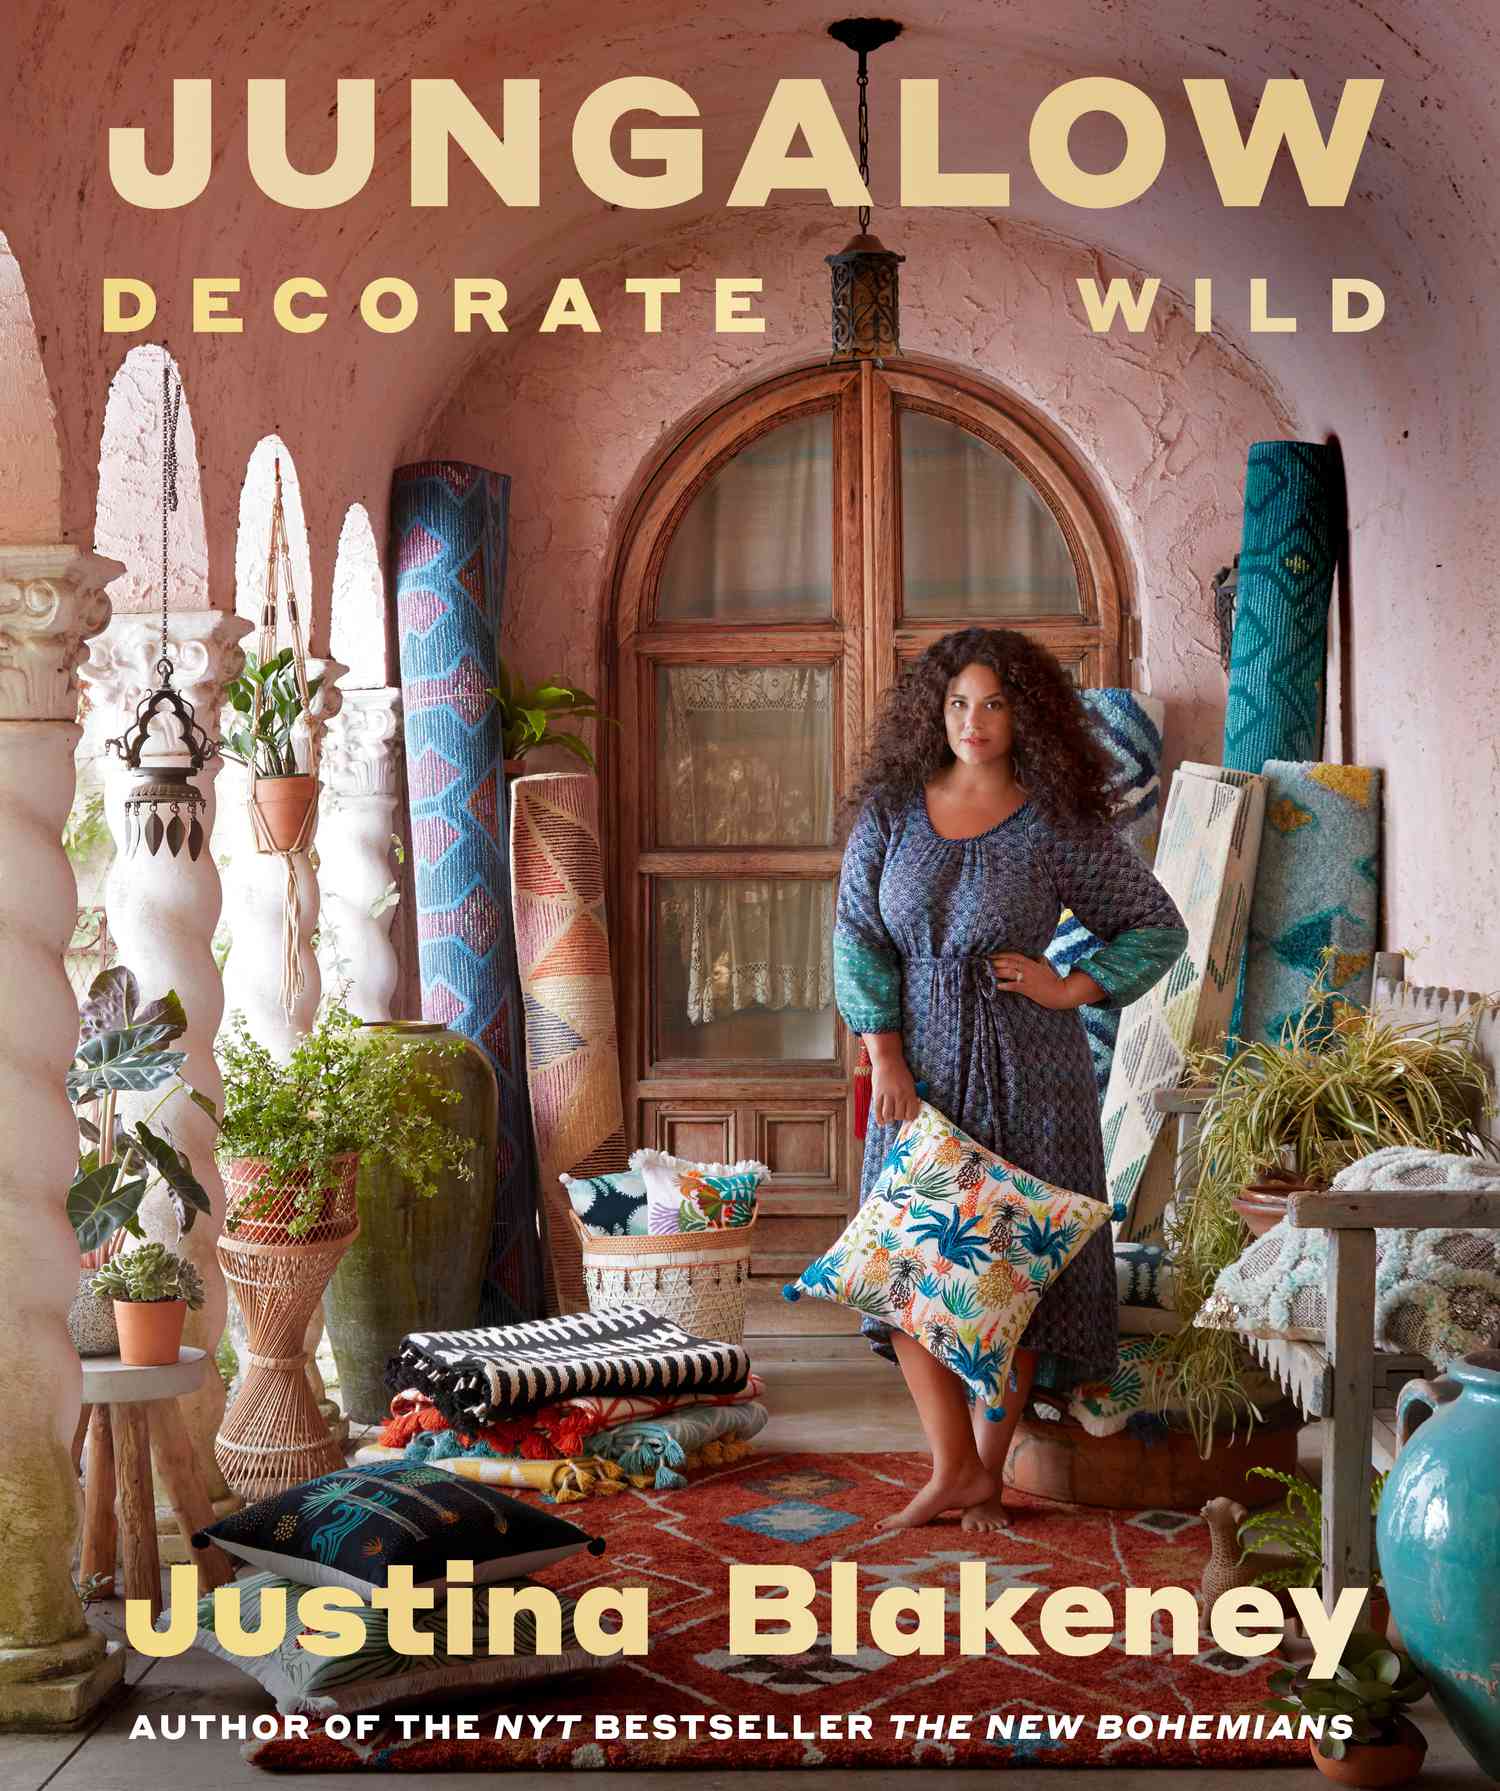 Jungalow Decorate Wild Buchcover mit Justina Blakeney